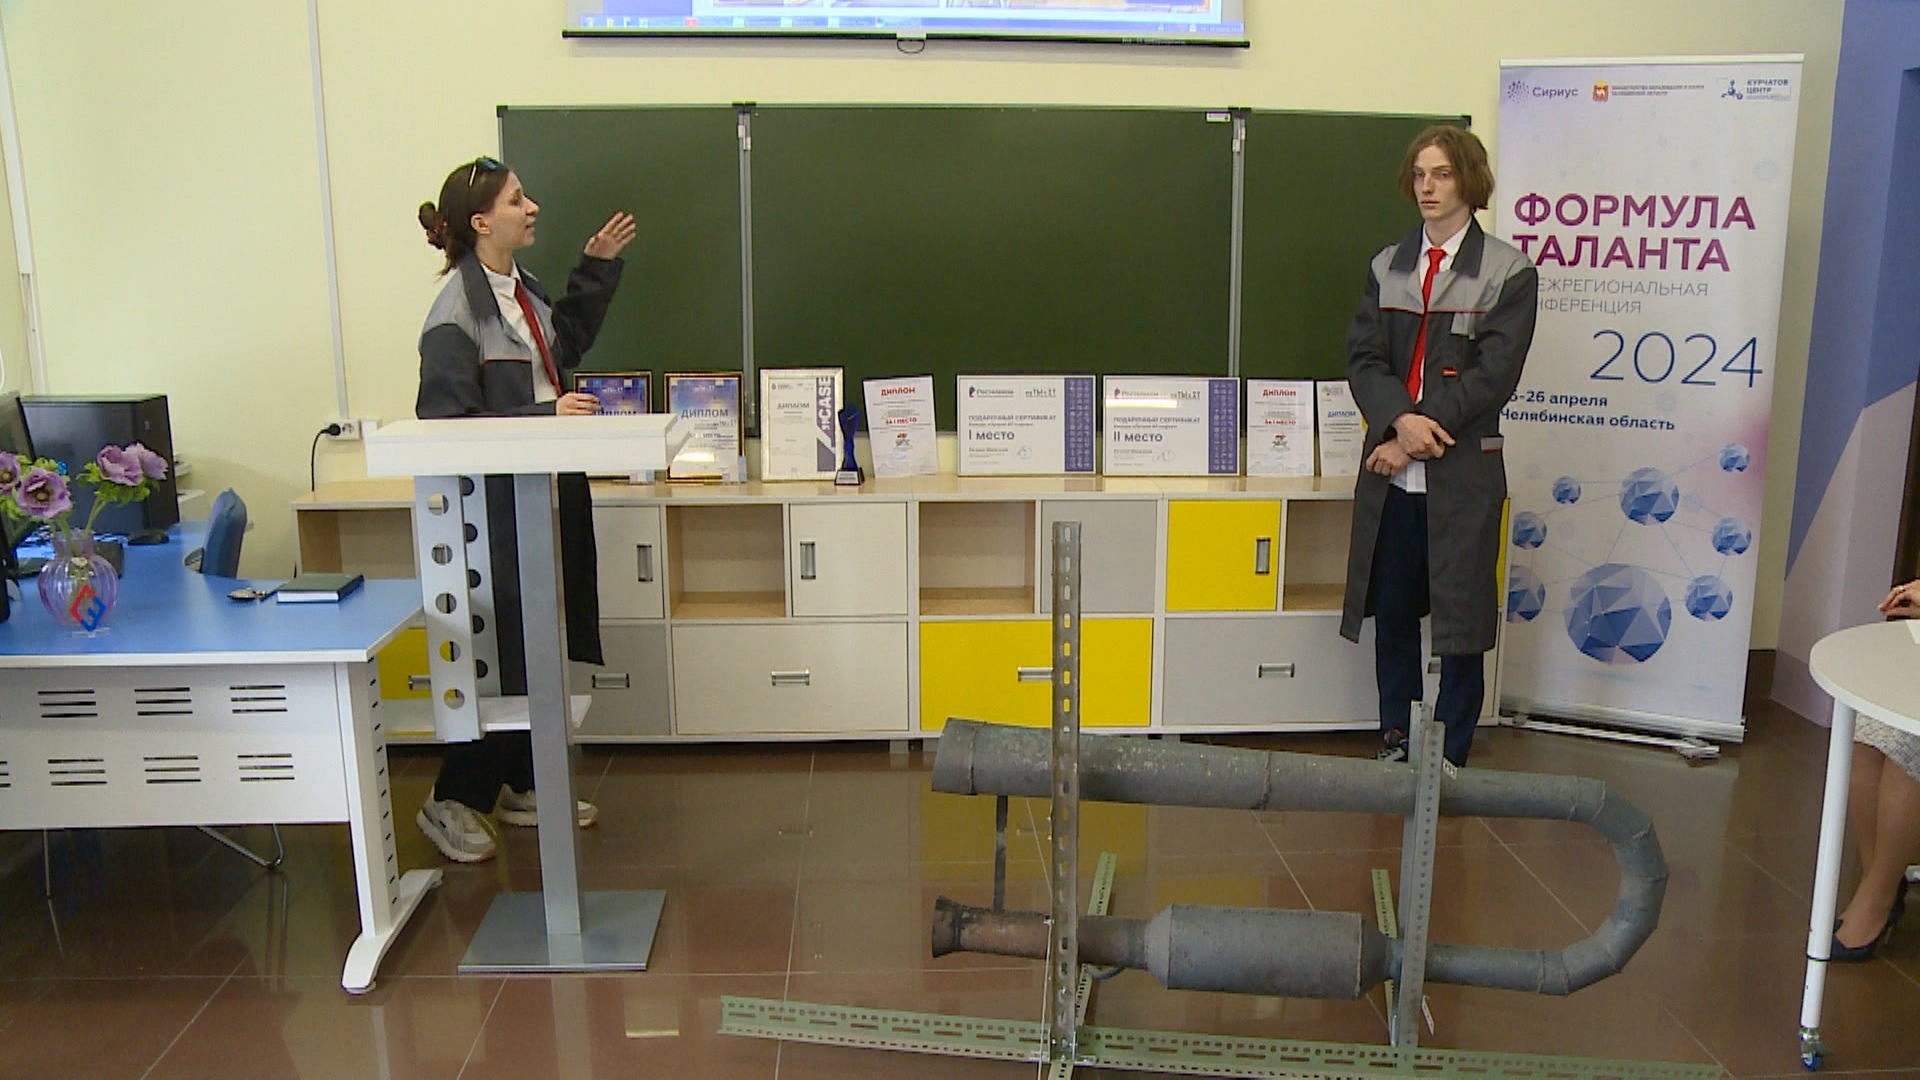 "Формула таланта": школьники представили свои разработки в Магнитогорске